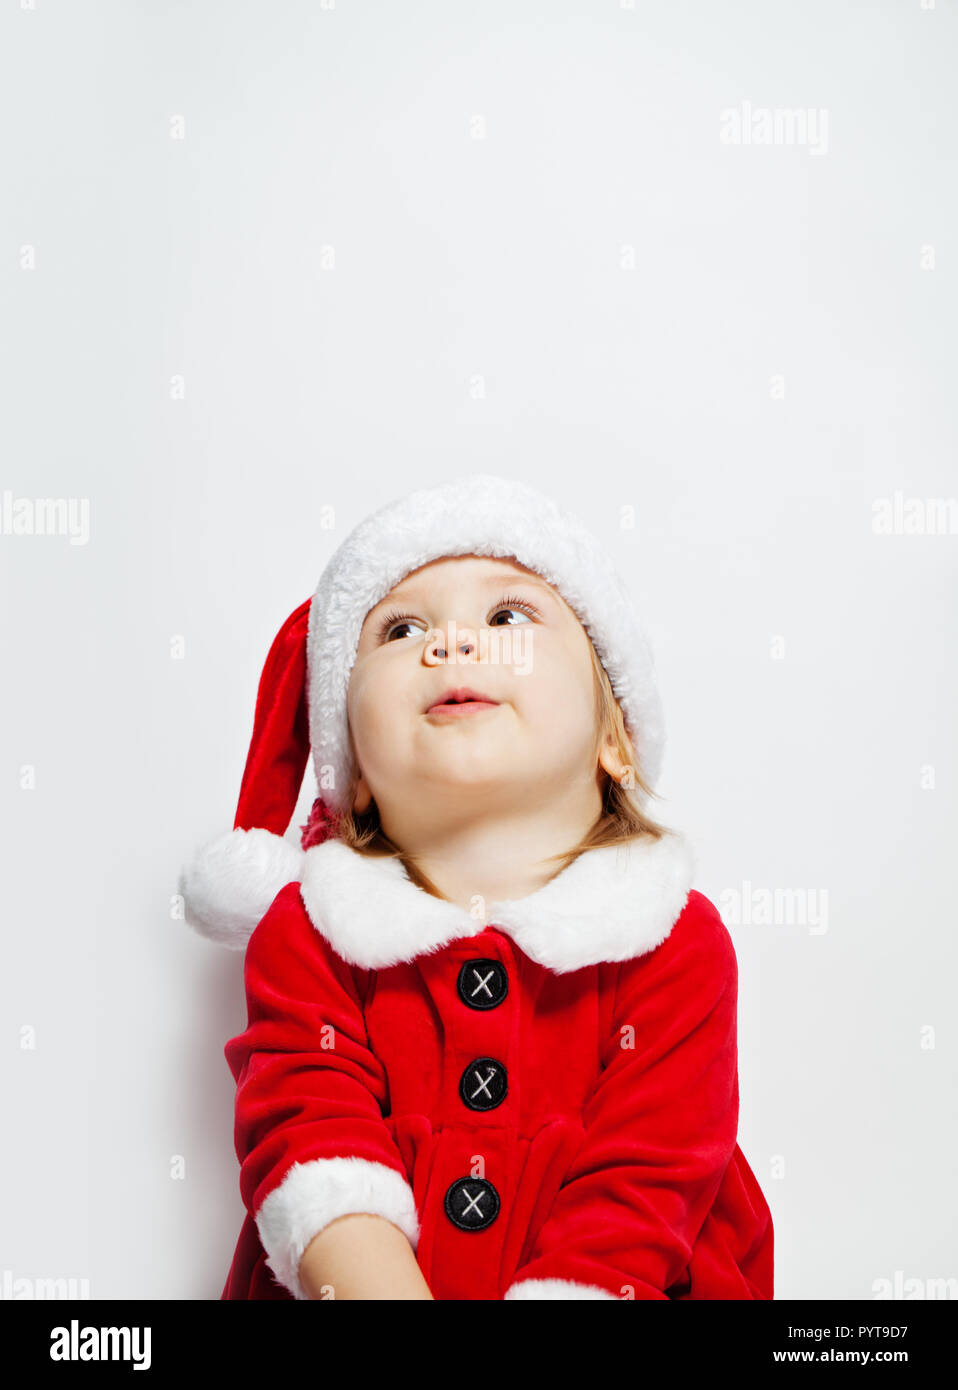 Niño lindo en Santa hat mirando en blanco, retrato de Navidad Foto de stock